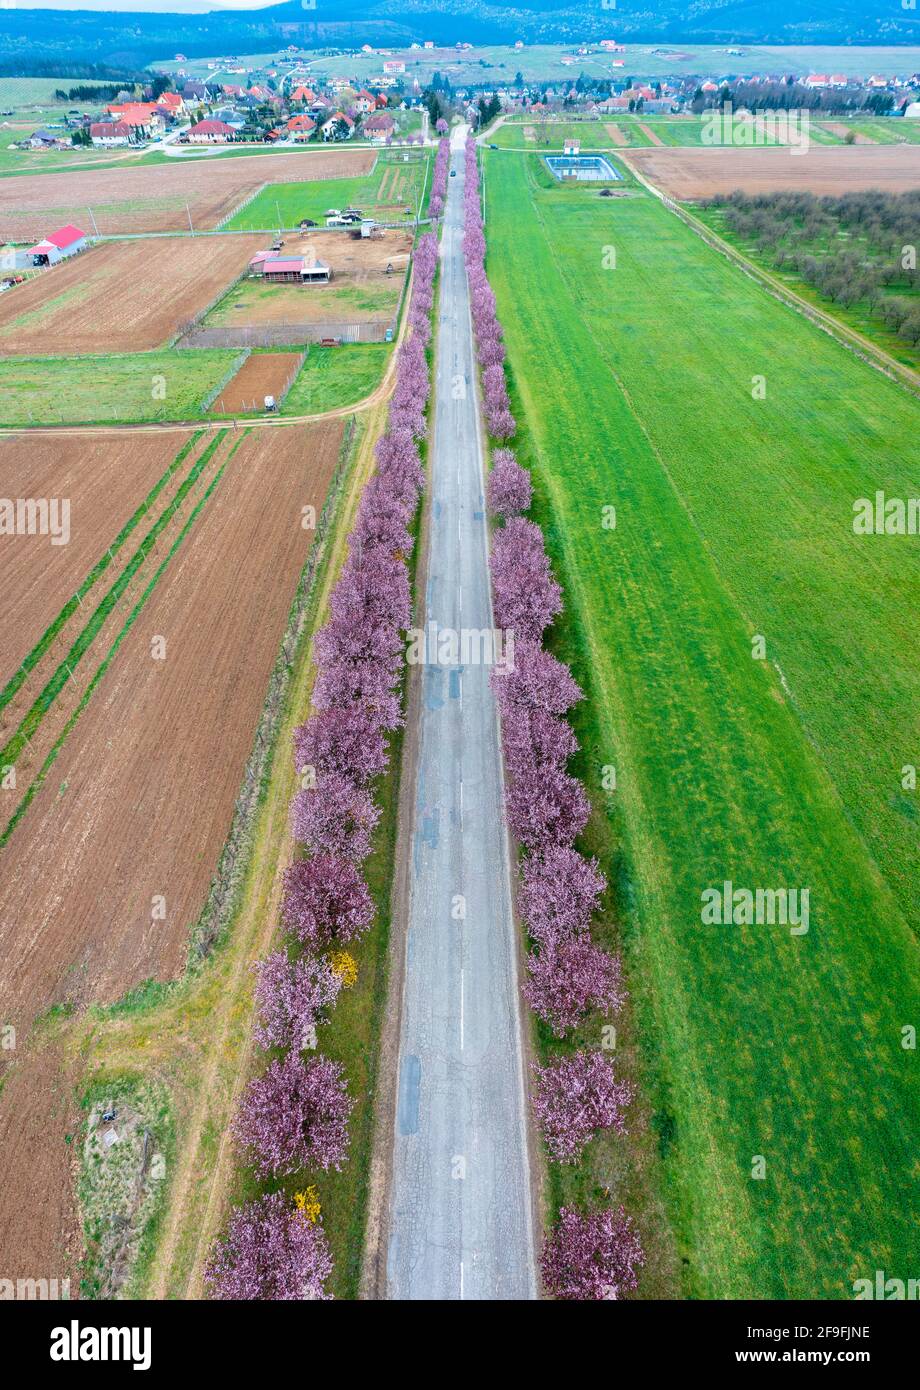 Berkenye, Hongrie - vue aérienne sur les magnifiques pruniers fleuris par la route. Paysage de lever de soleil de printemps, cerisiers en fleurs. Banque D'Images